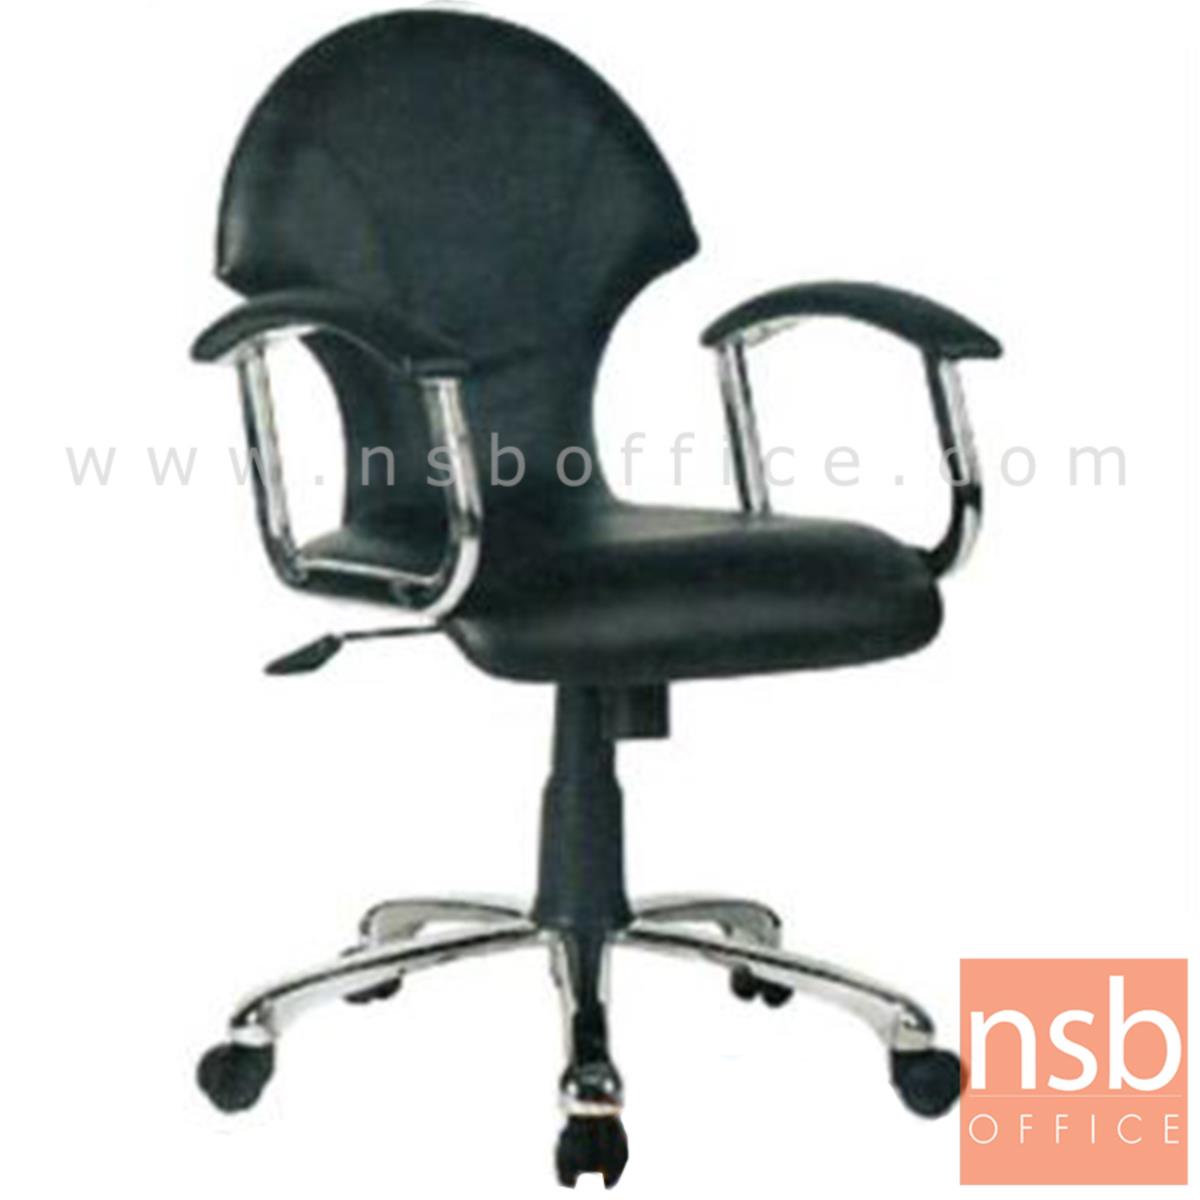 B03A316:เก้าอี้สำนักงาน รุ่น Brianne (ไบรแอนน์)   โช๊คแก๊ส มีก้อนโยก ขาเหล็กชุบโครเมี่ยม